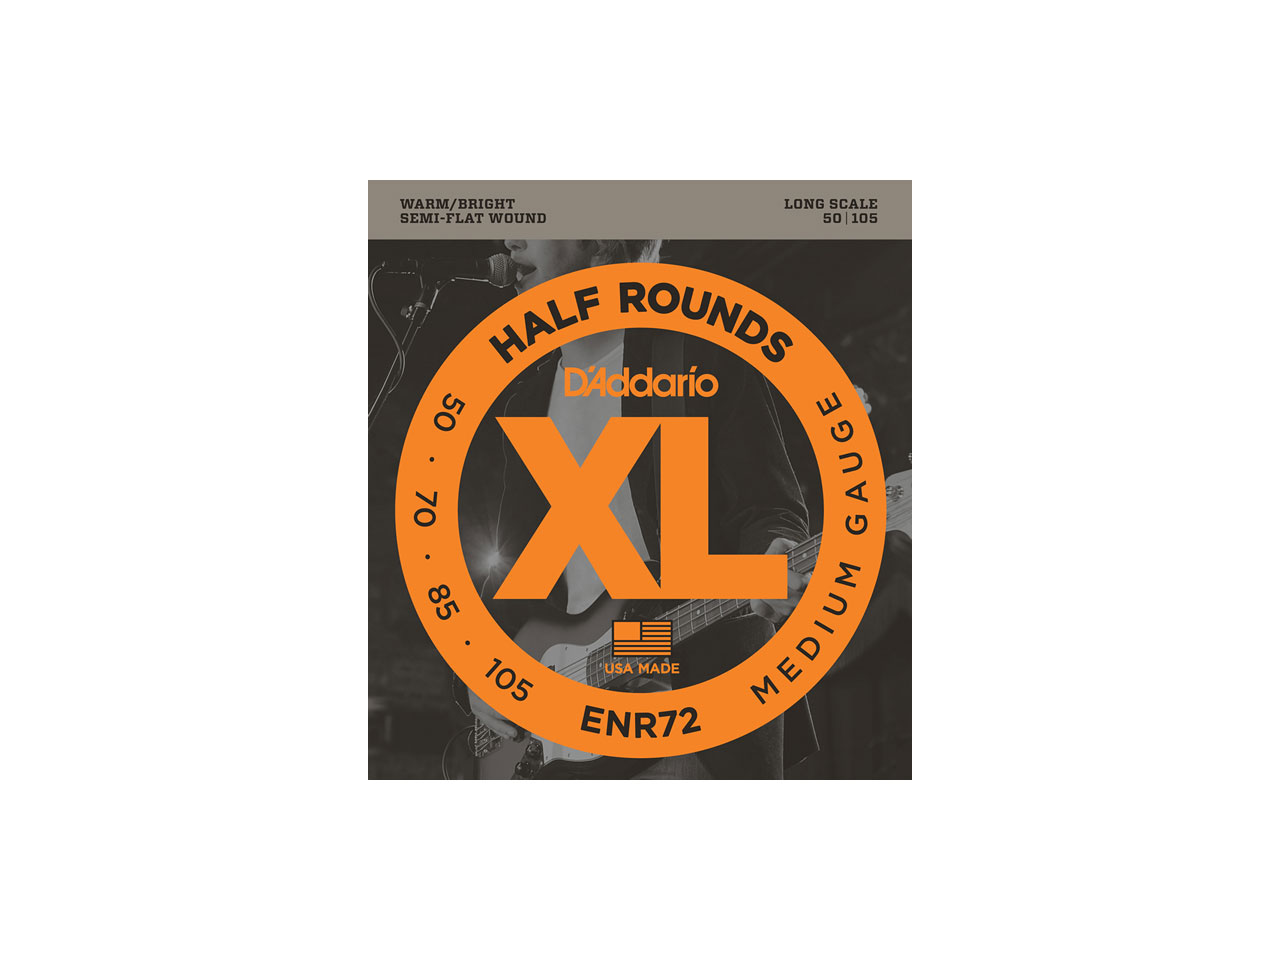 D'Addario(ダダリオ) XL Half Rounds , Long Scale , Medium / ENR72 (エレキベース弦)